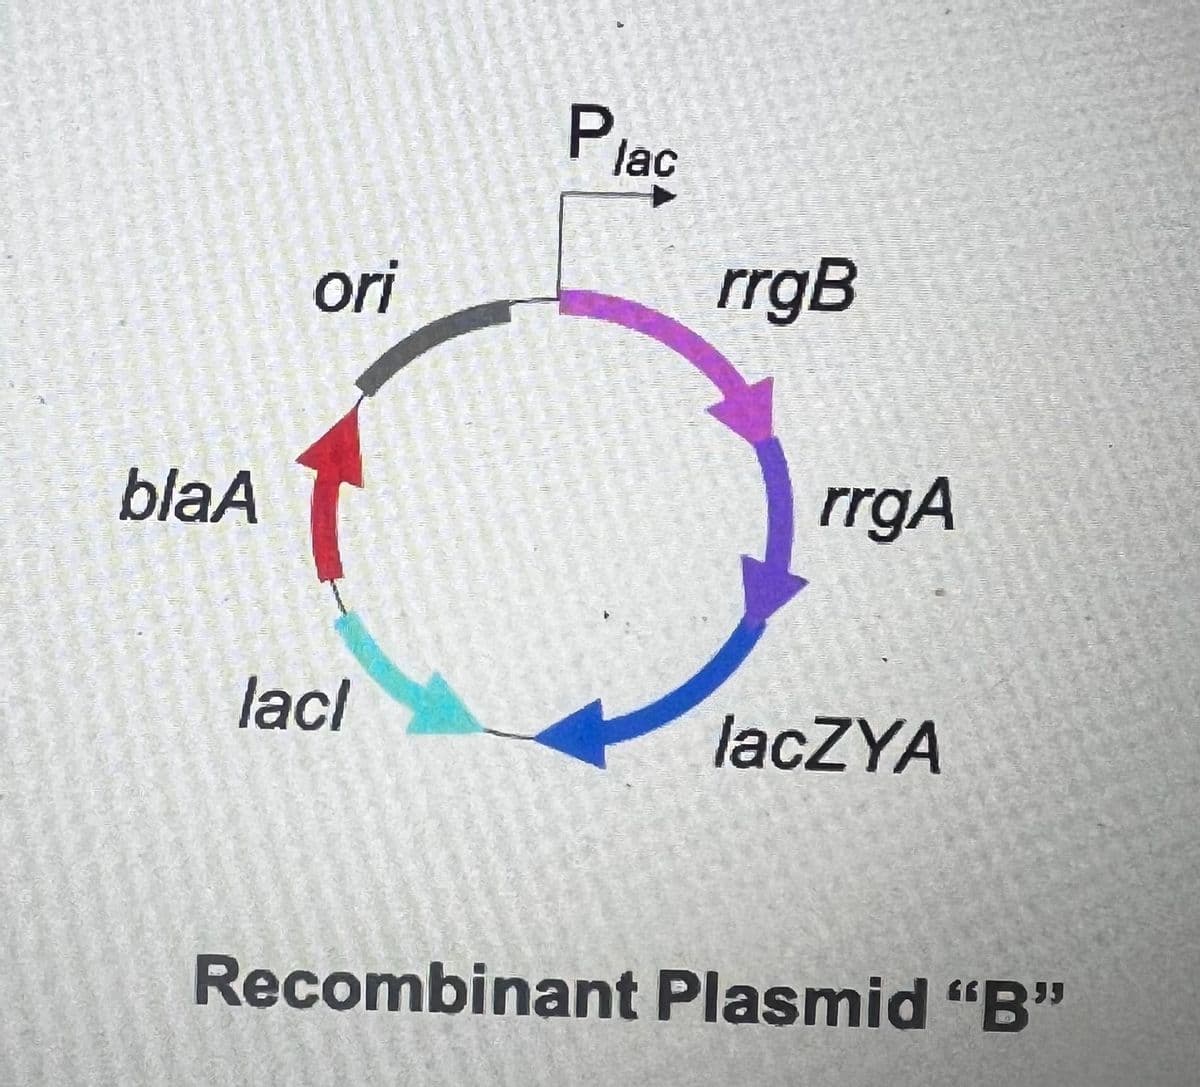 blaA
ori
lacl
Plac
rrgB
rrgA
lacZYA
Recombinant Plasmid "B"